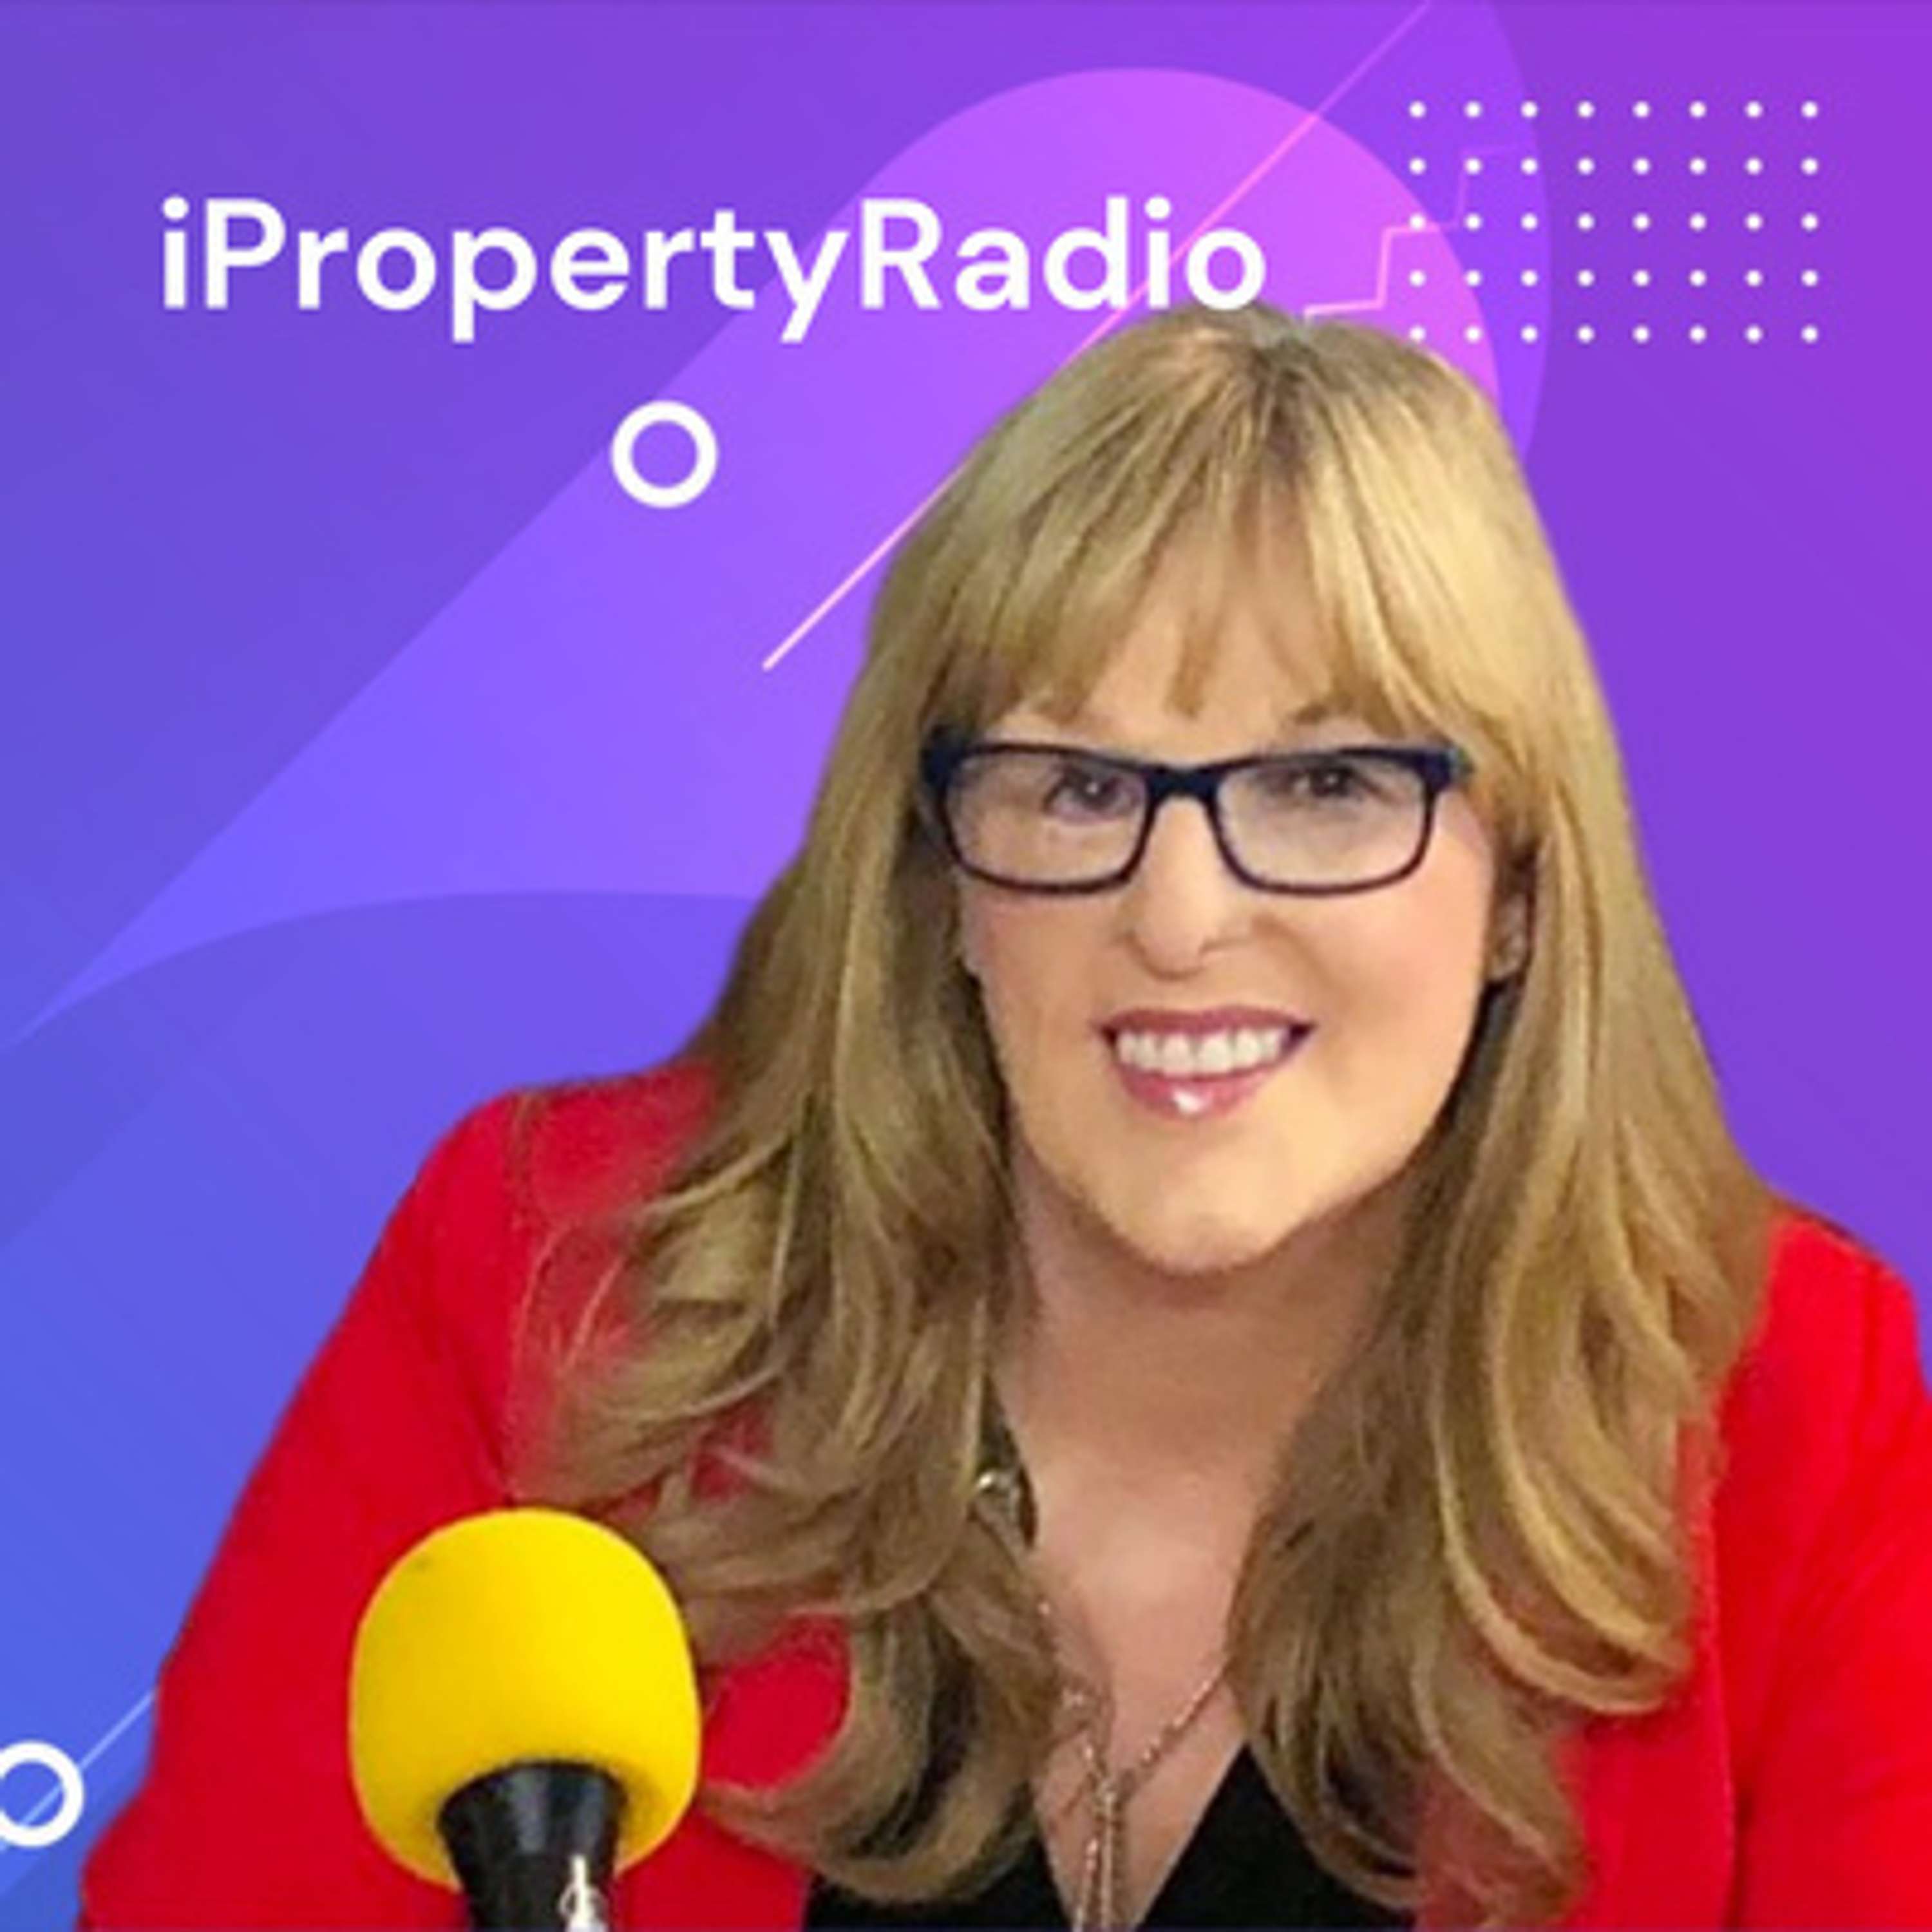 Ep.43 iPropertyRadio: Property Matters, November 26th 2019